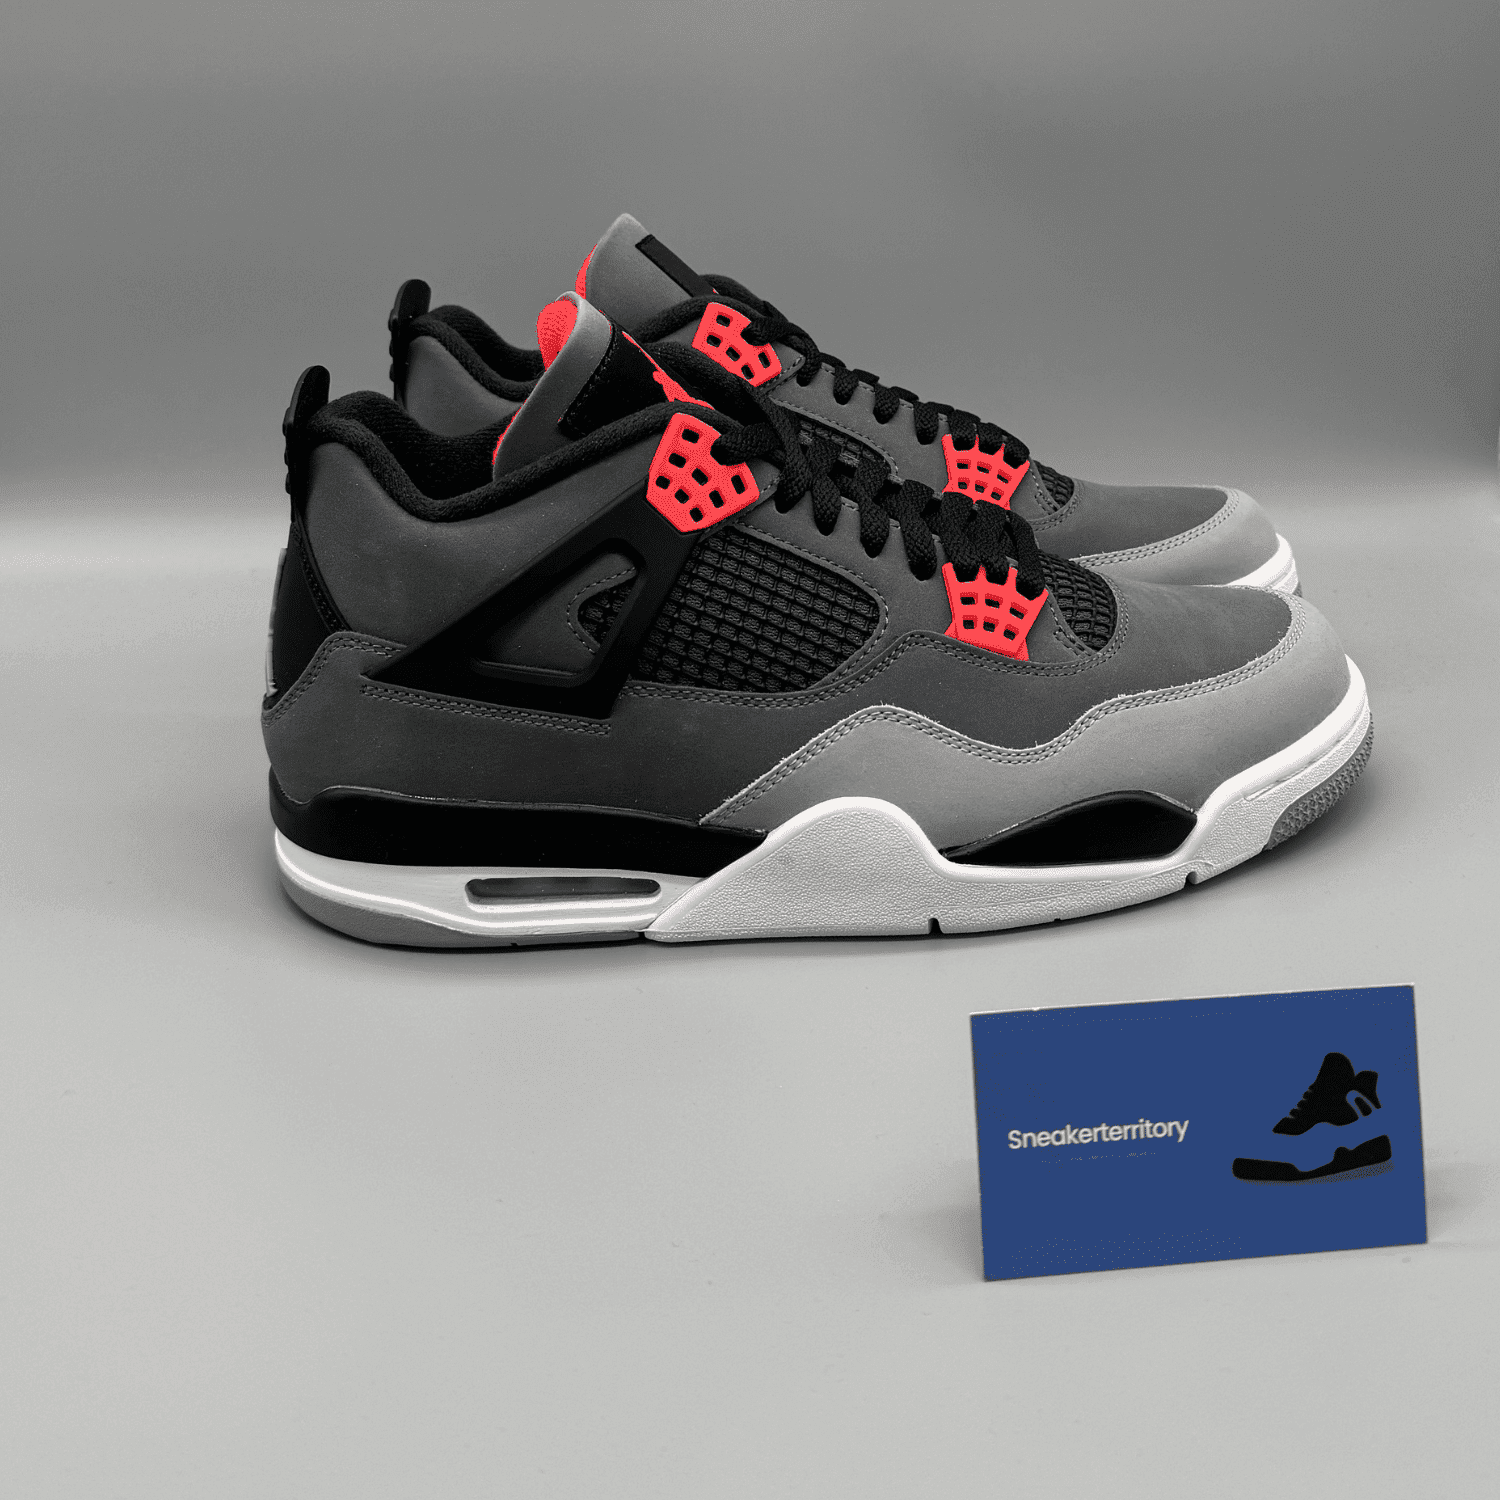 Air Jordan 4 Infrared - Sneakerterritory; Sneaker Territory